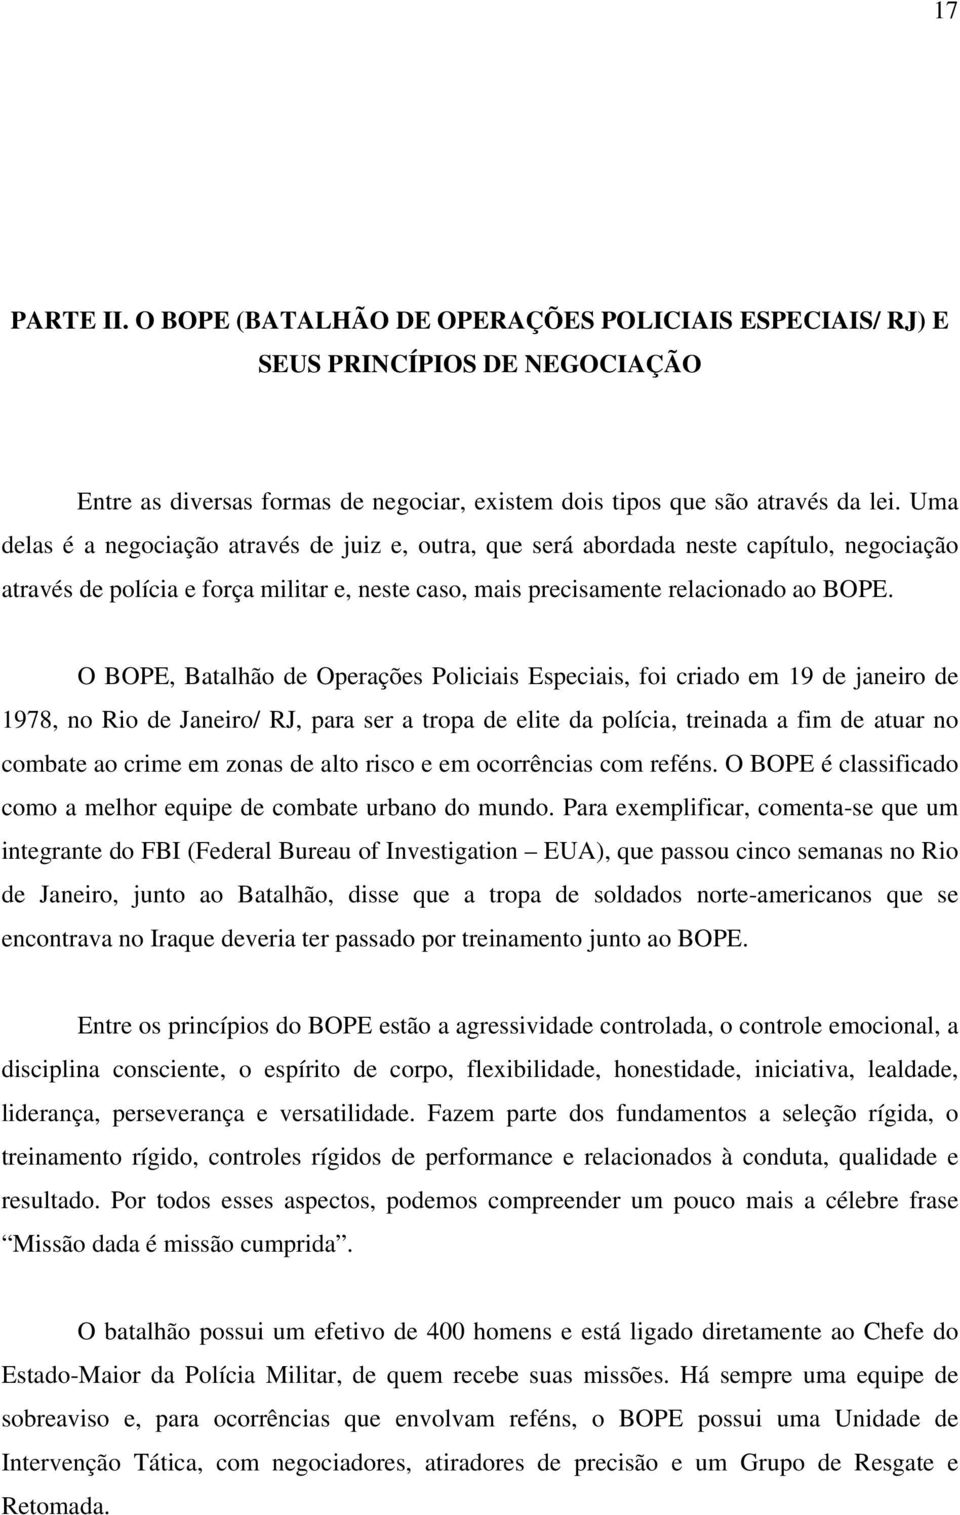 O BOPE, Batalhão de Operações Policiais Especiais, foi criado em 19 de janeiro de 1978, no Rio de Janeiro/ RJ, para ser a tropa de elite da polícia, treinada a fim de atuar no combate ao crime em